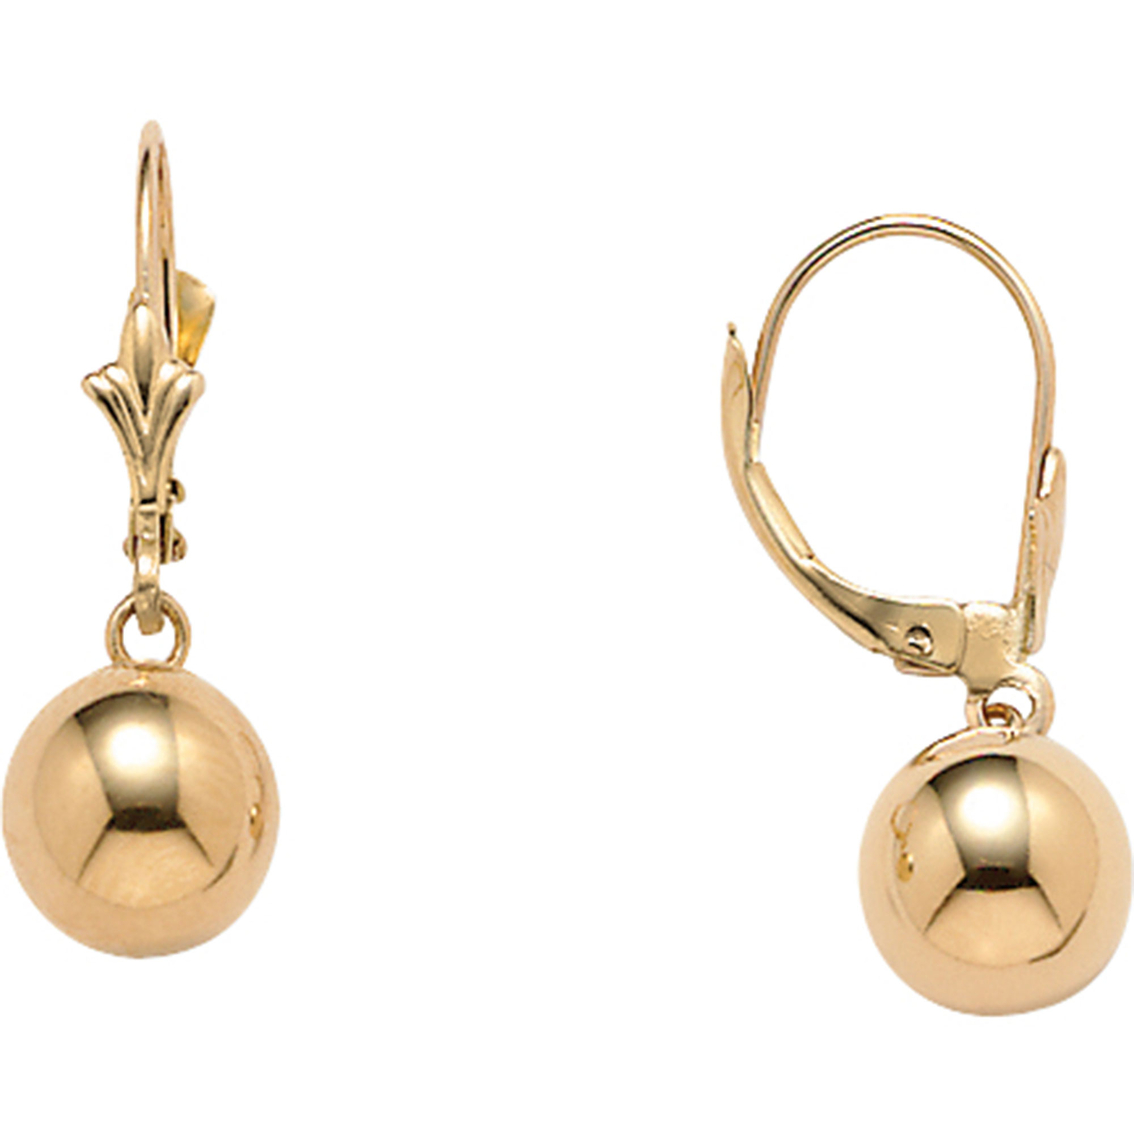 Palmbeach 14k Gold Drop Earrings | Gold Earrings | Jewelry & Watches ...